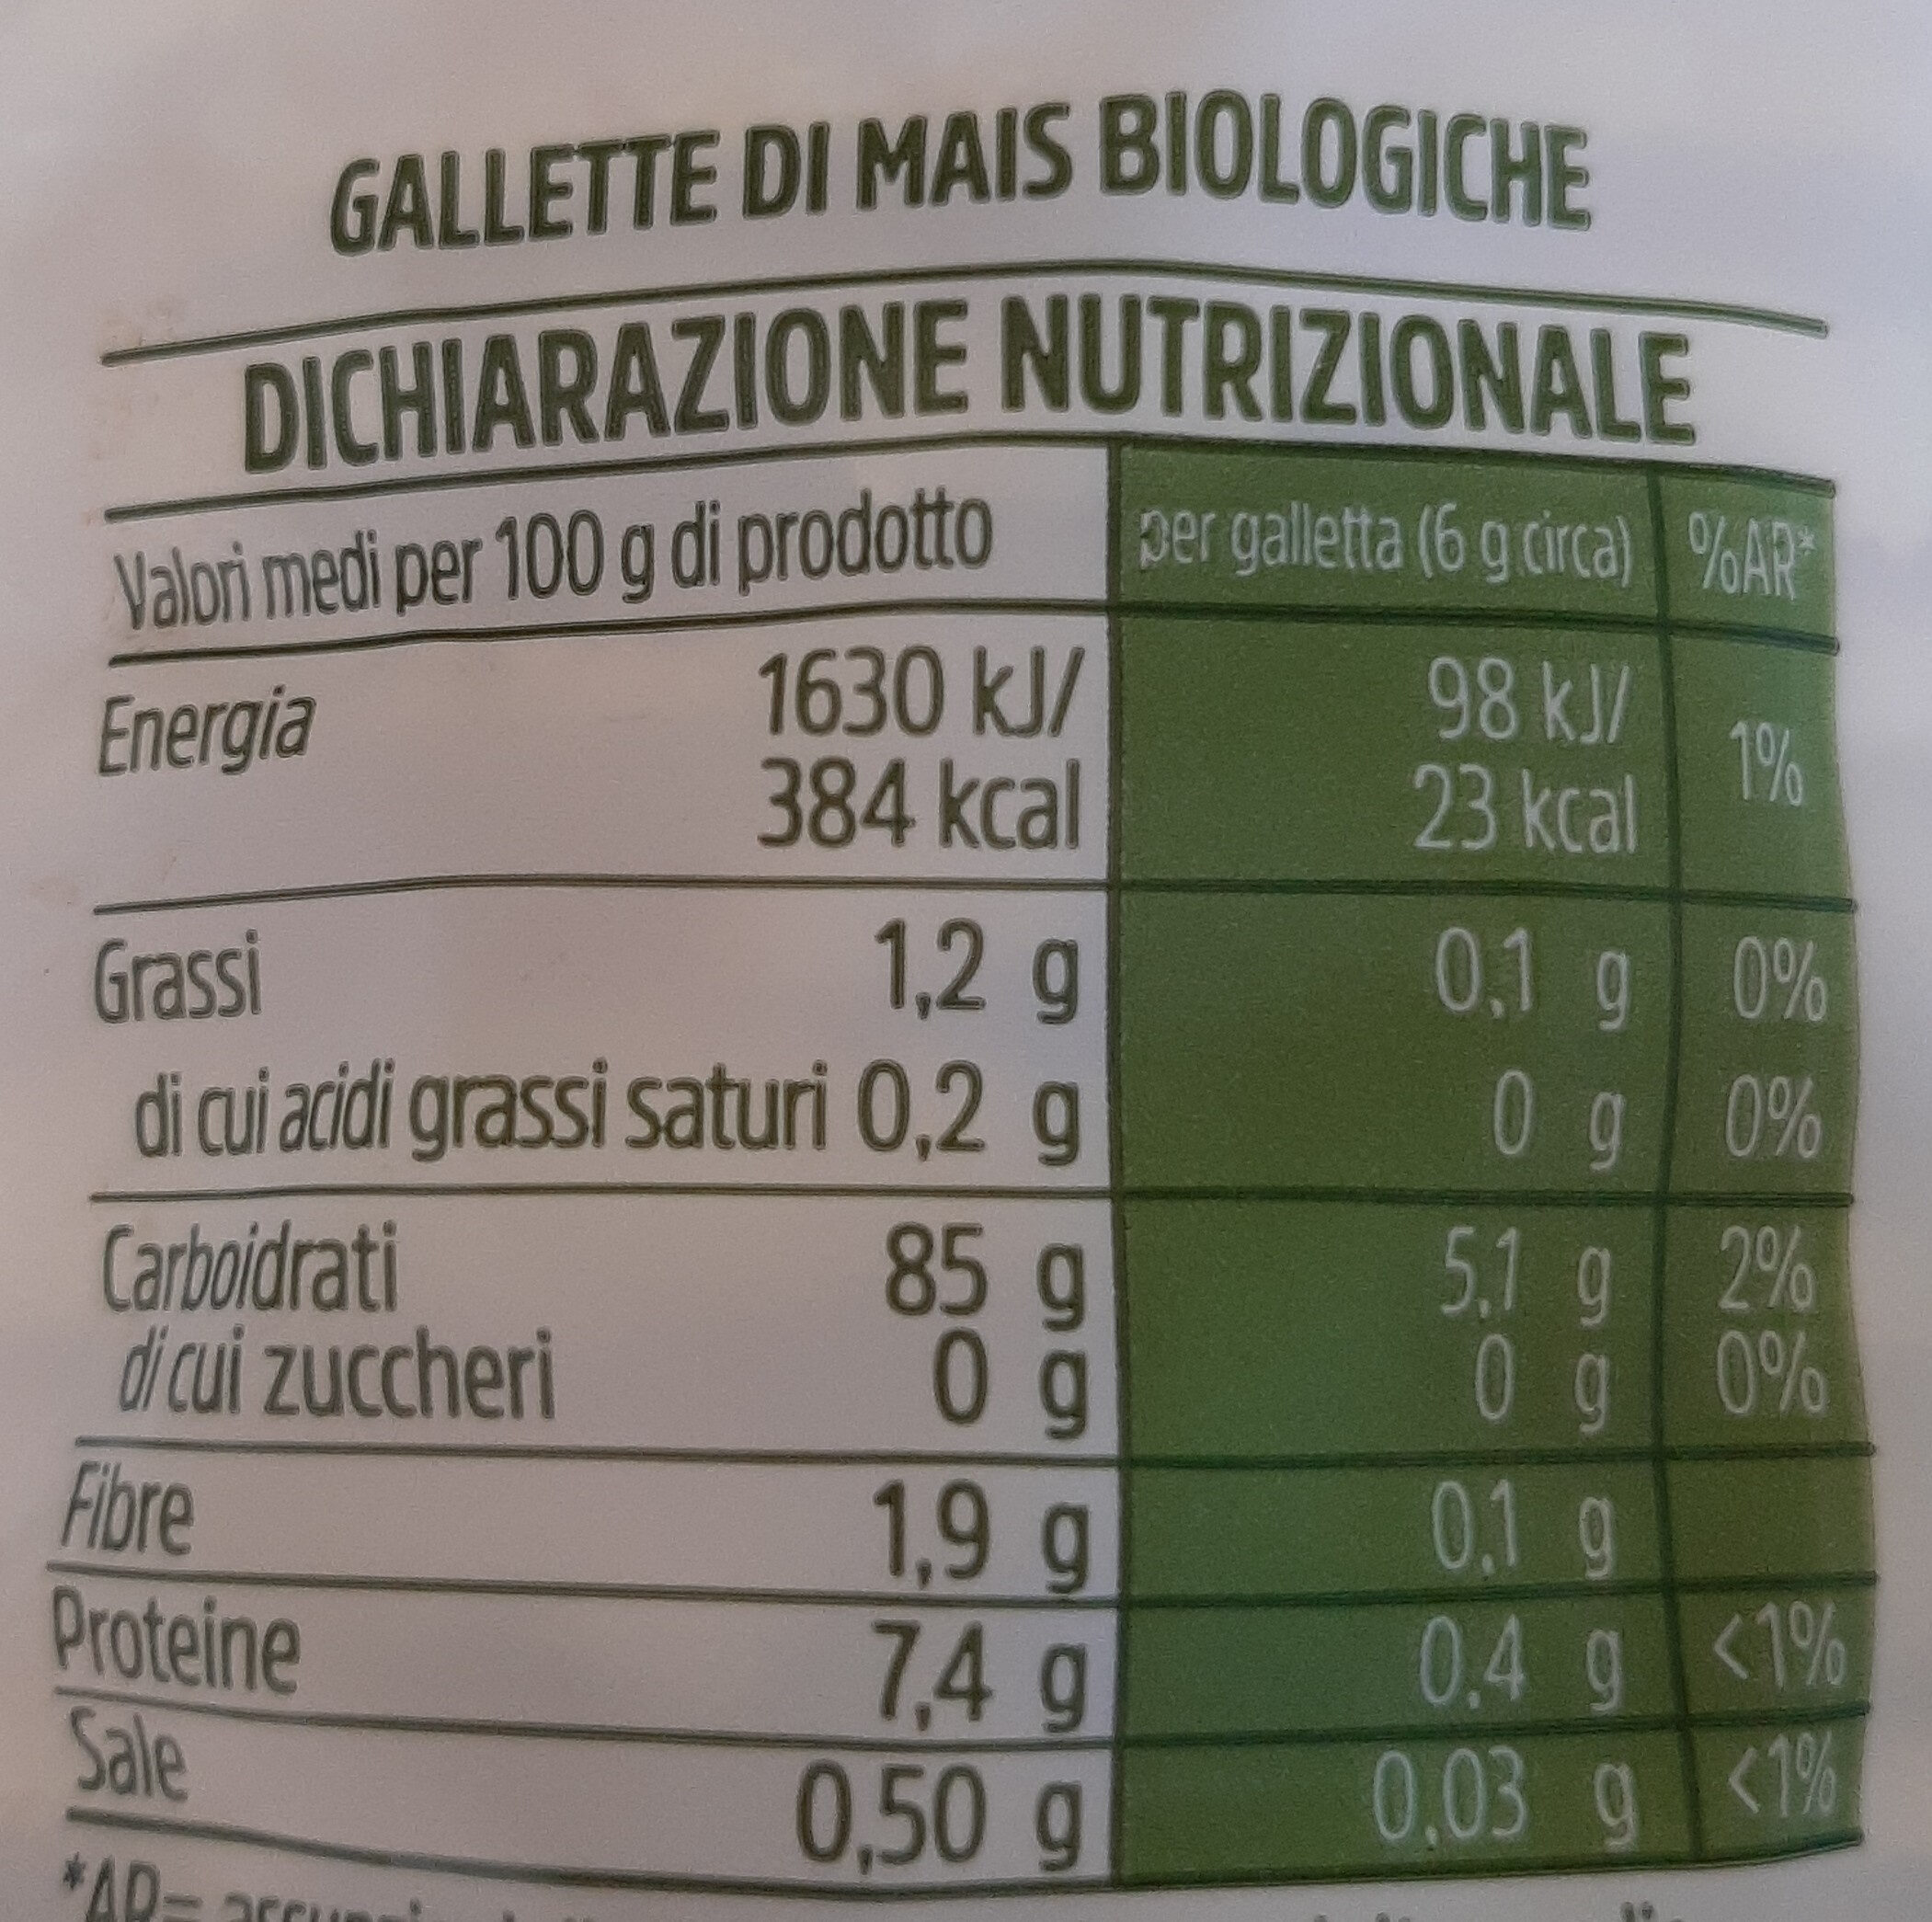 Gallette di mais - Valori nutrizionali